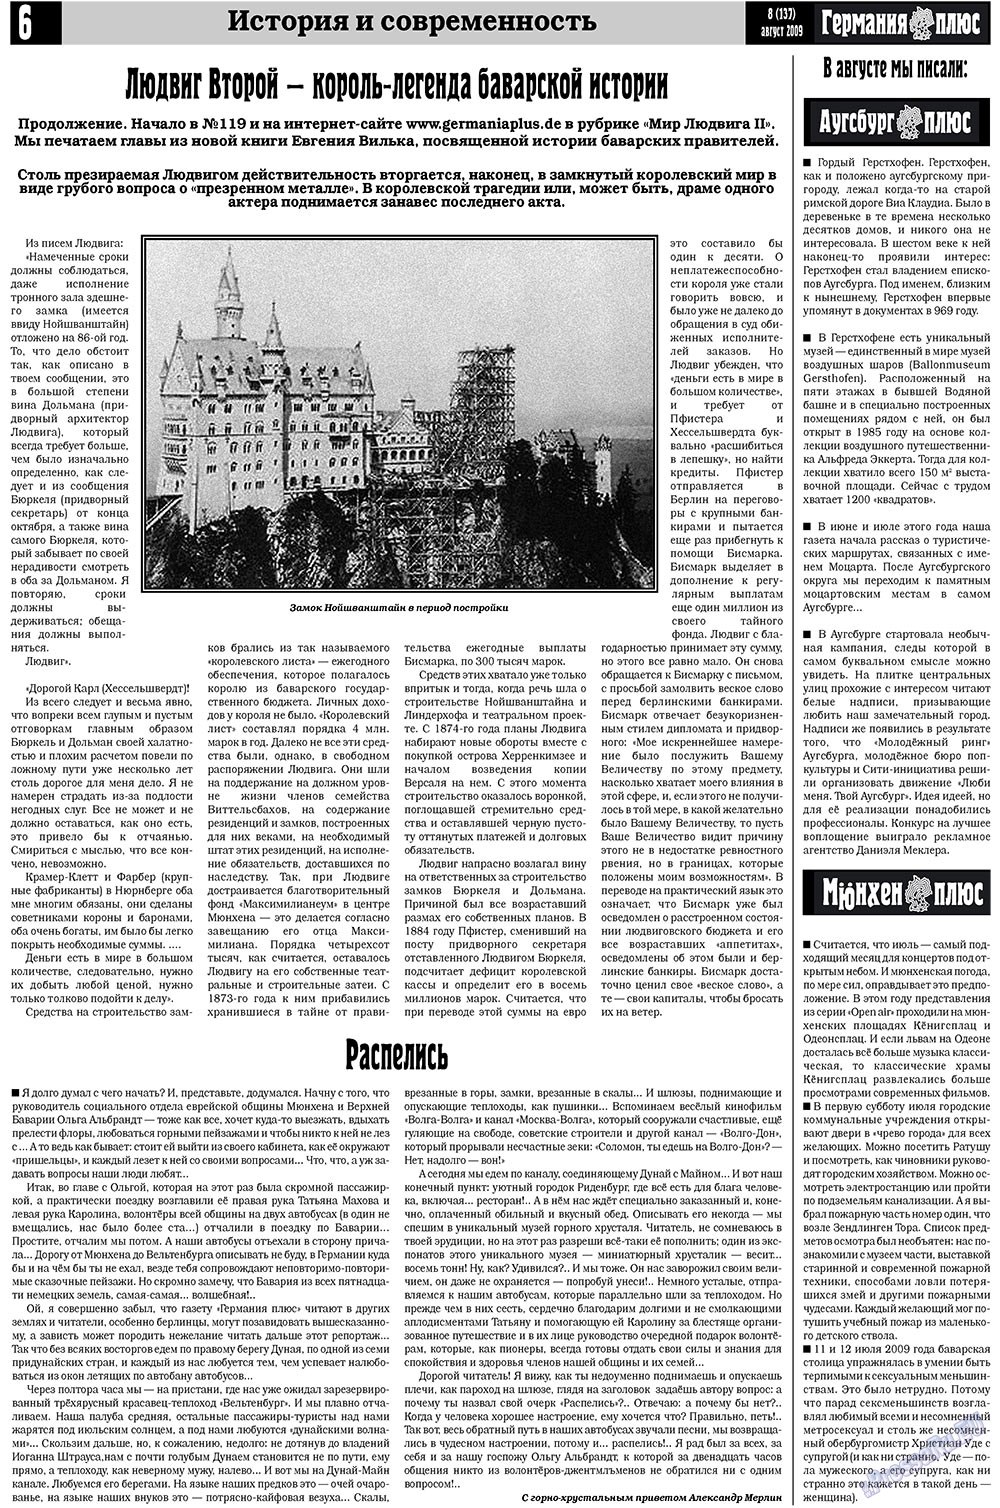 Германия плюс, газета. 2009 №8 стр.6